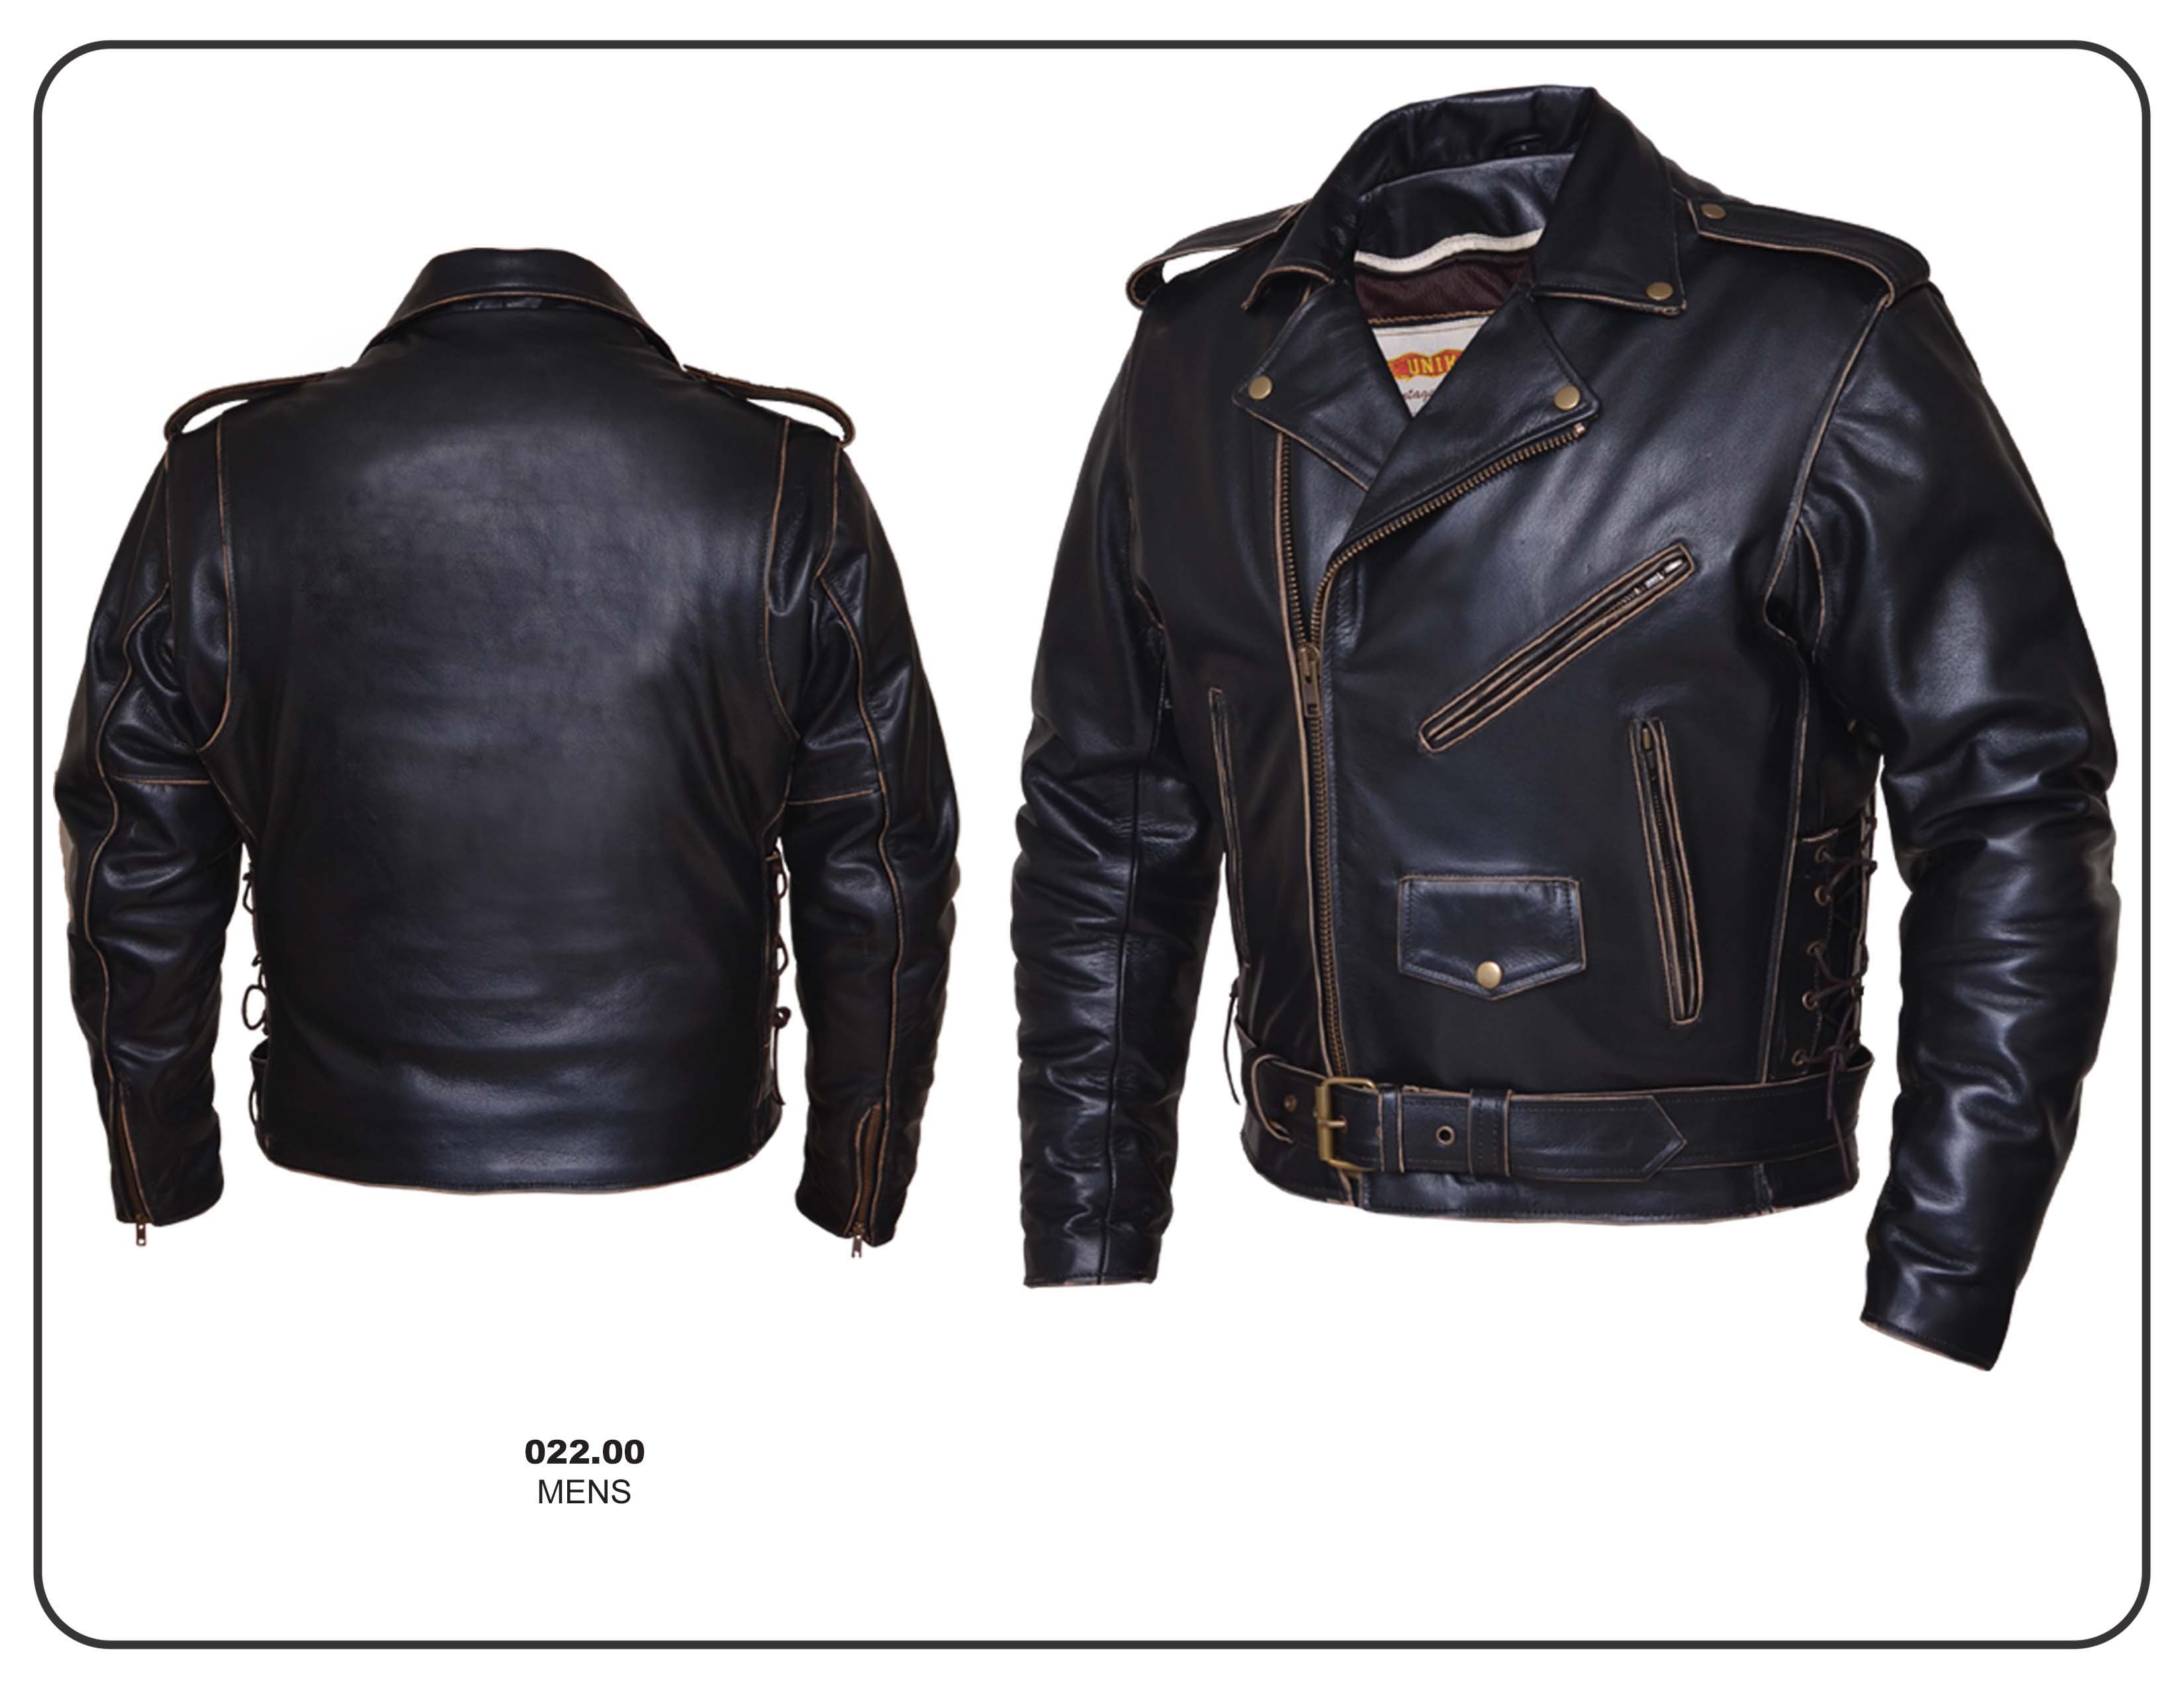 Unik Mens Leather Motorcycle Jacket - Cairoamani.com